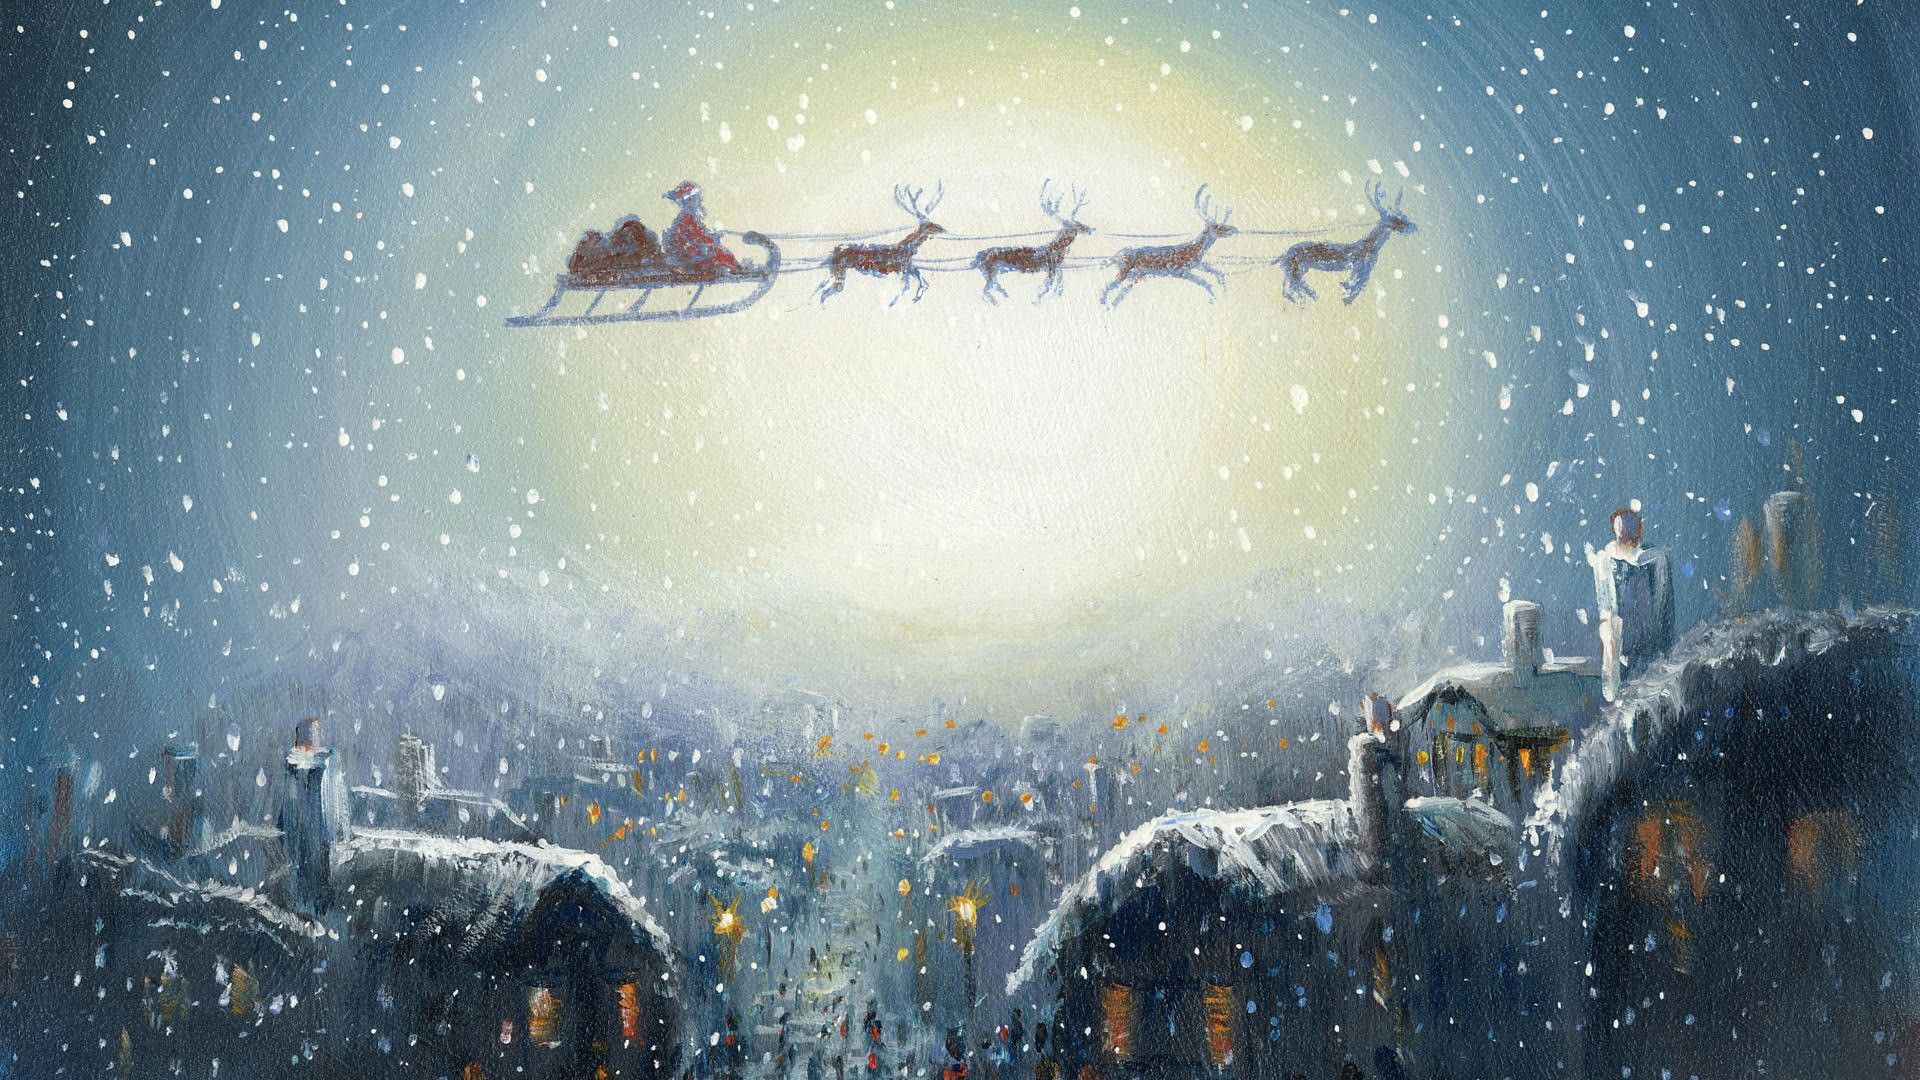 Santa Claus Fly Art Wallpaper Fondos de pantalla | WallpaperLepi